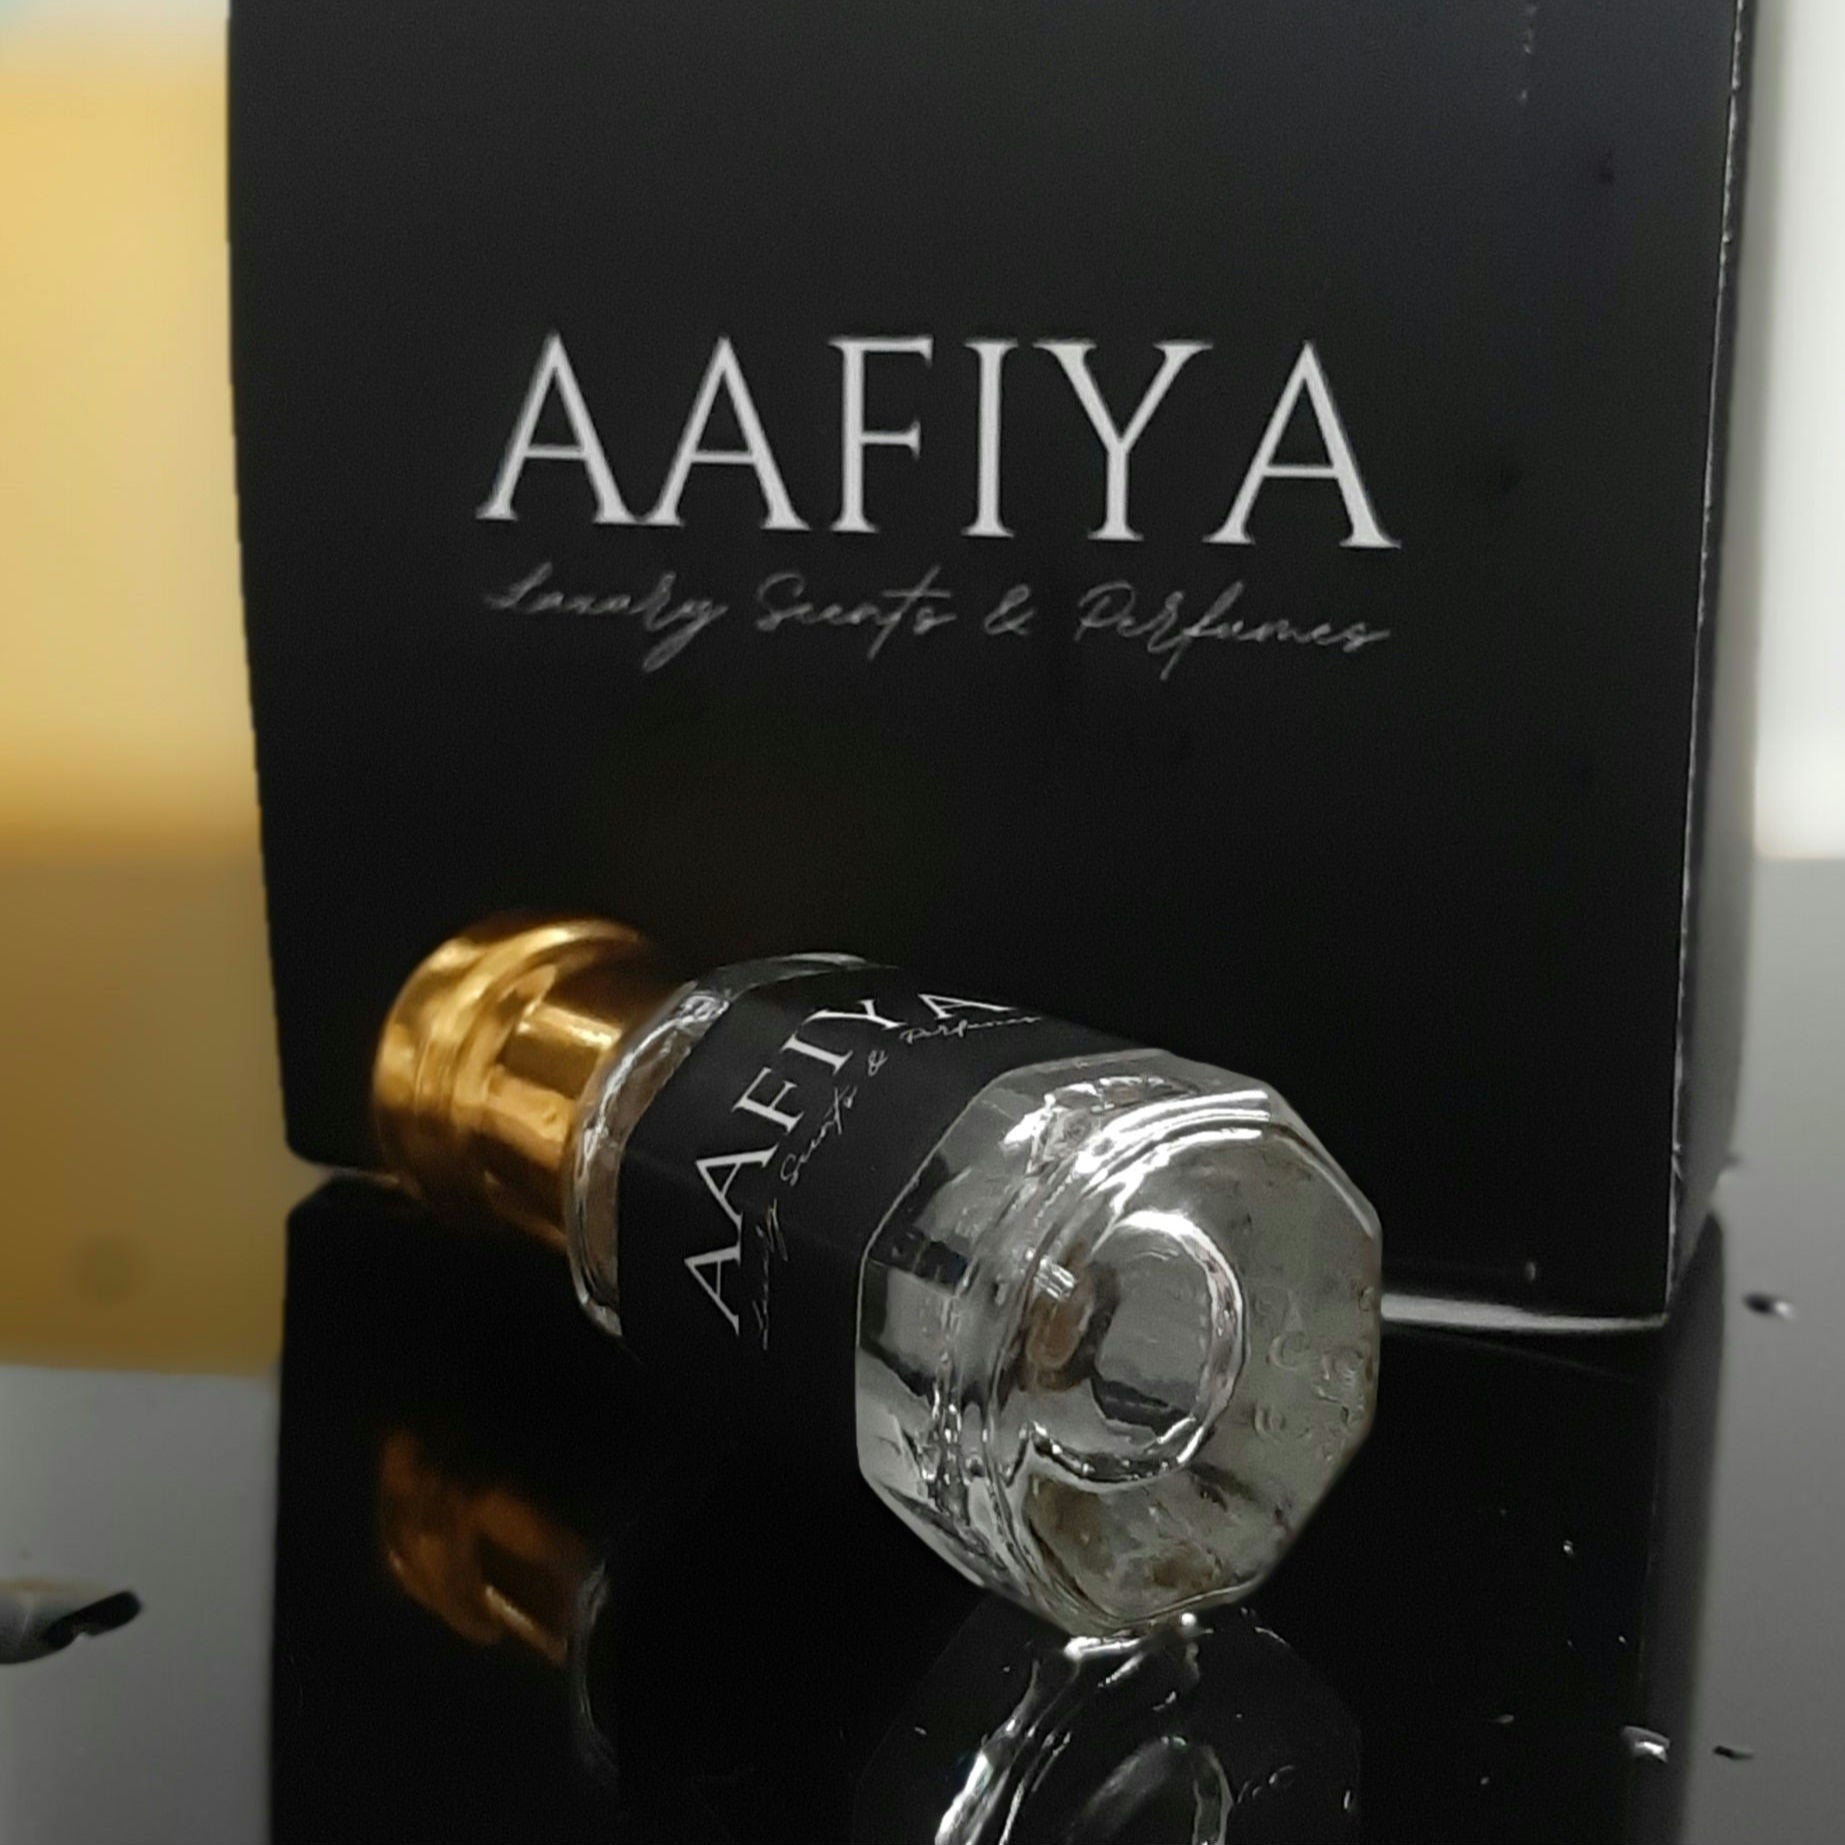 Saiful Shama - Aafiya Luxury Scents & Perfumes